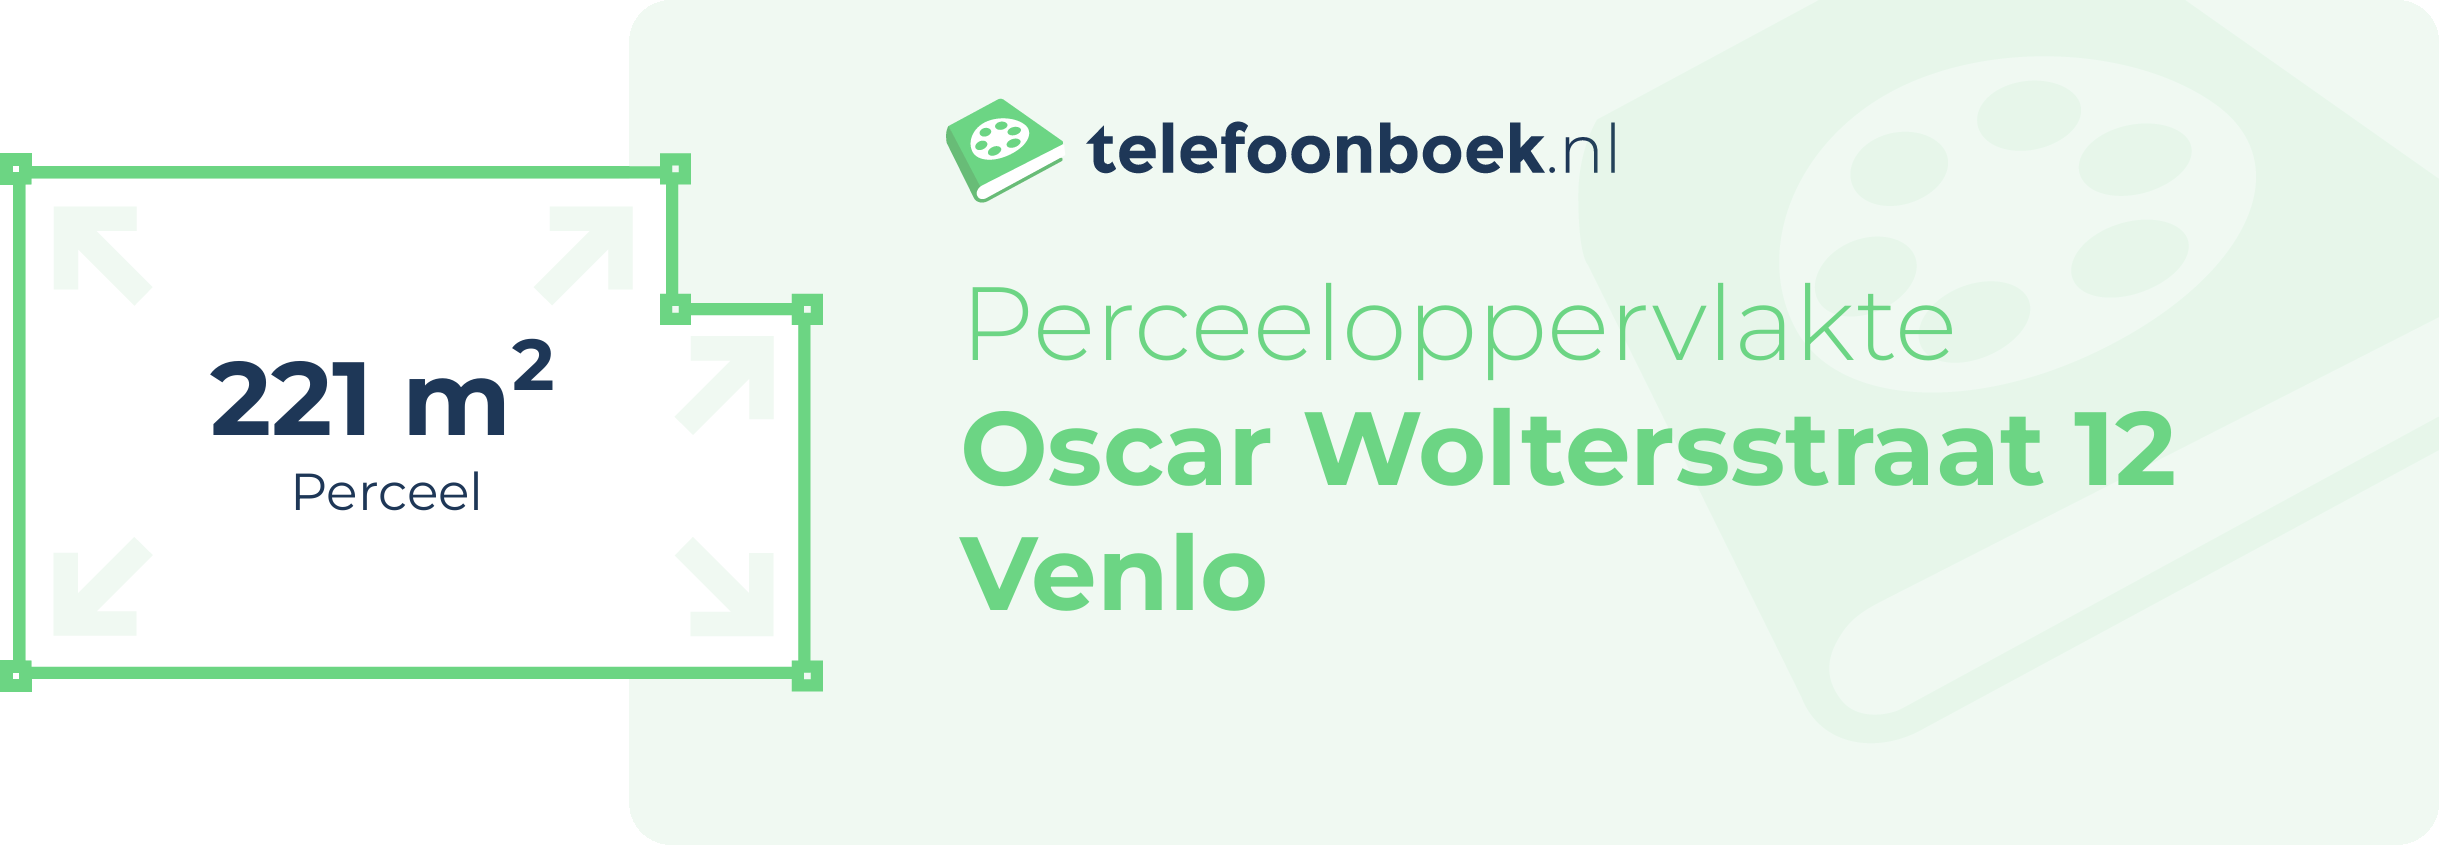 Perceeloppervlakte Oscar Woltersstraat 12 Venlo